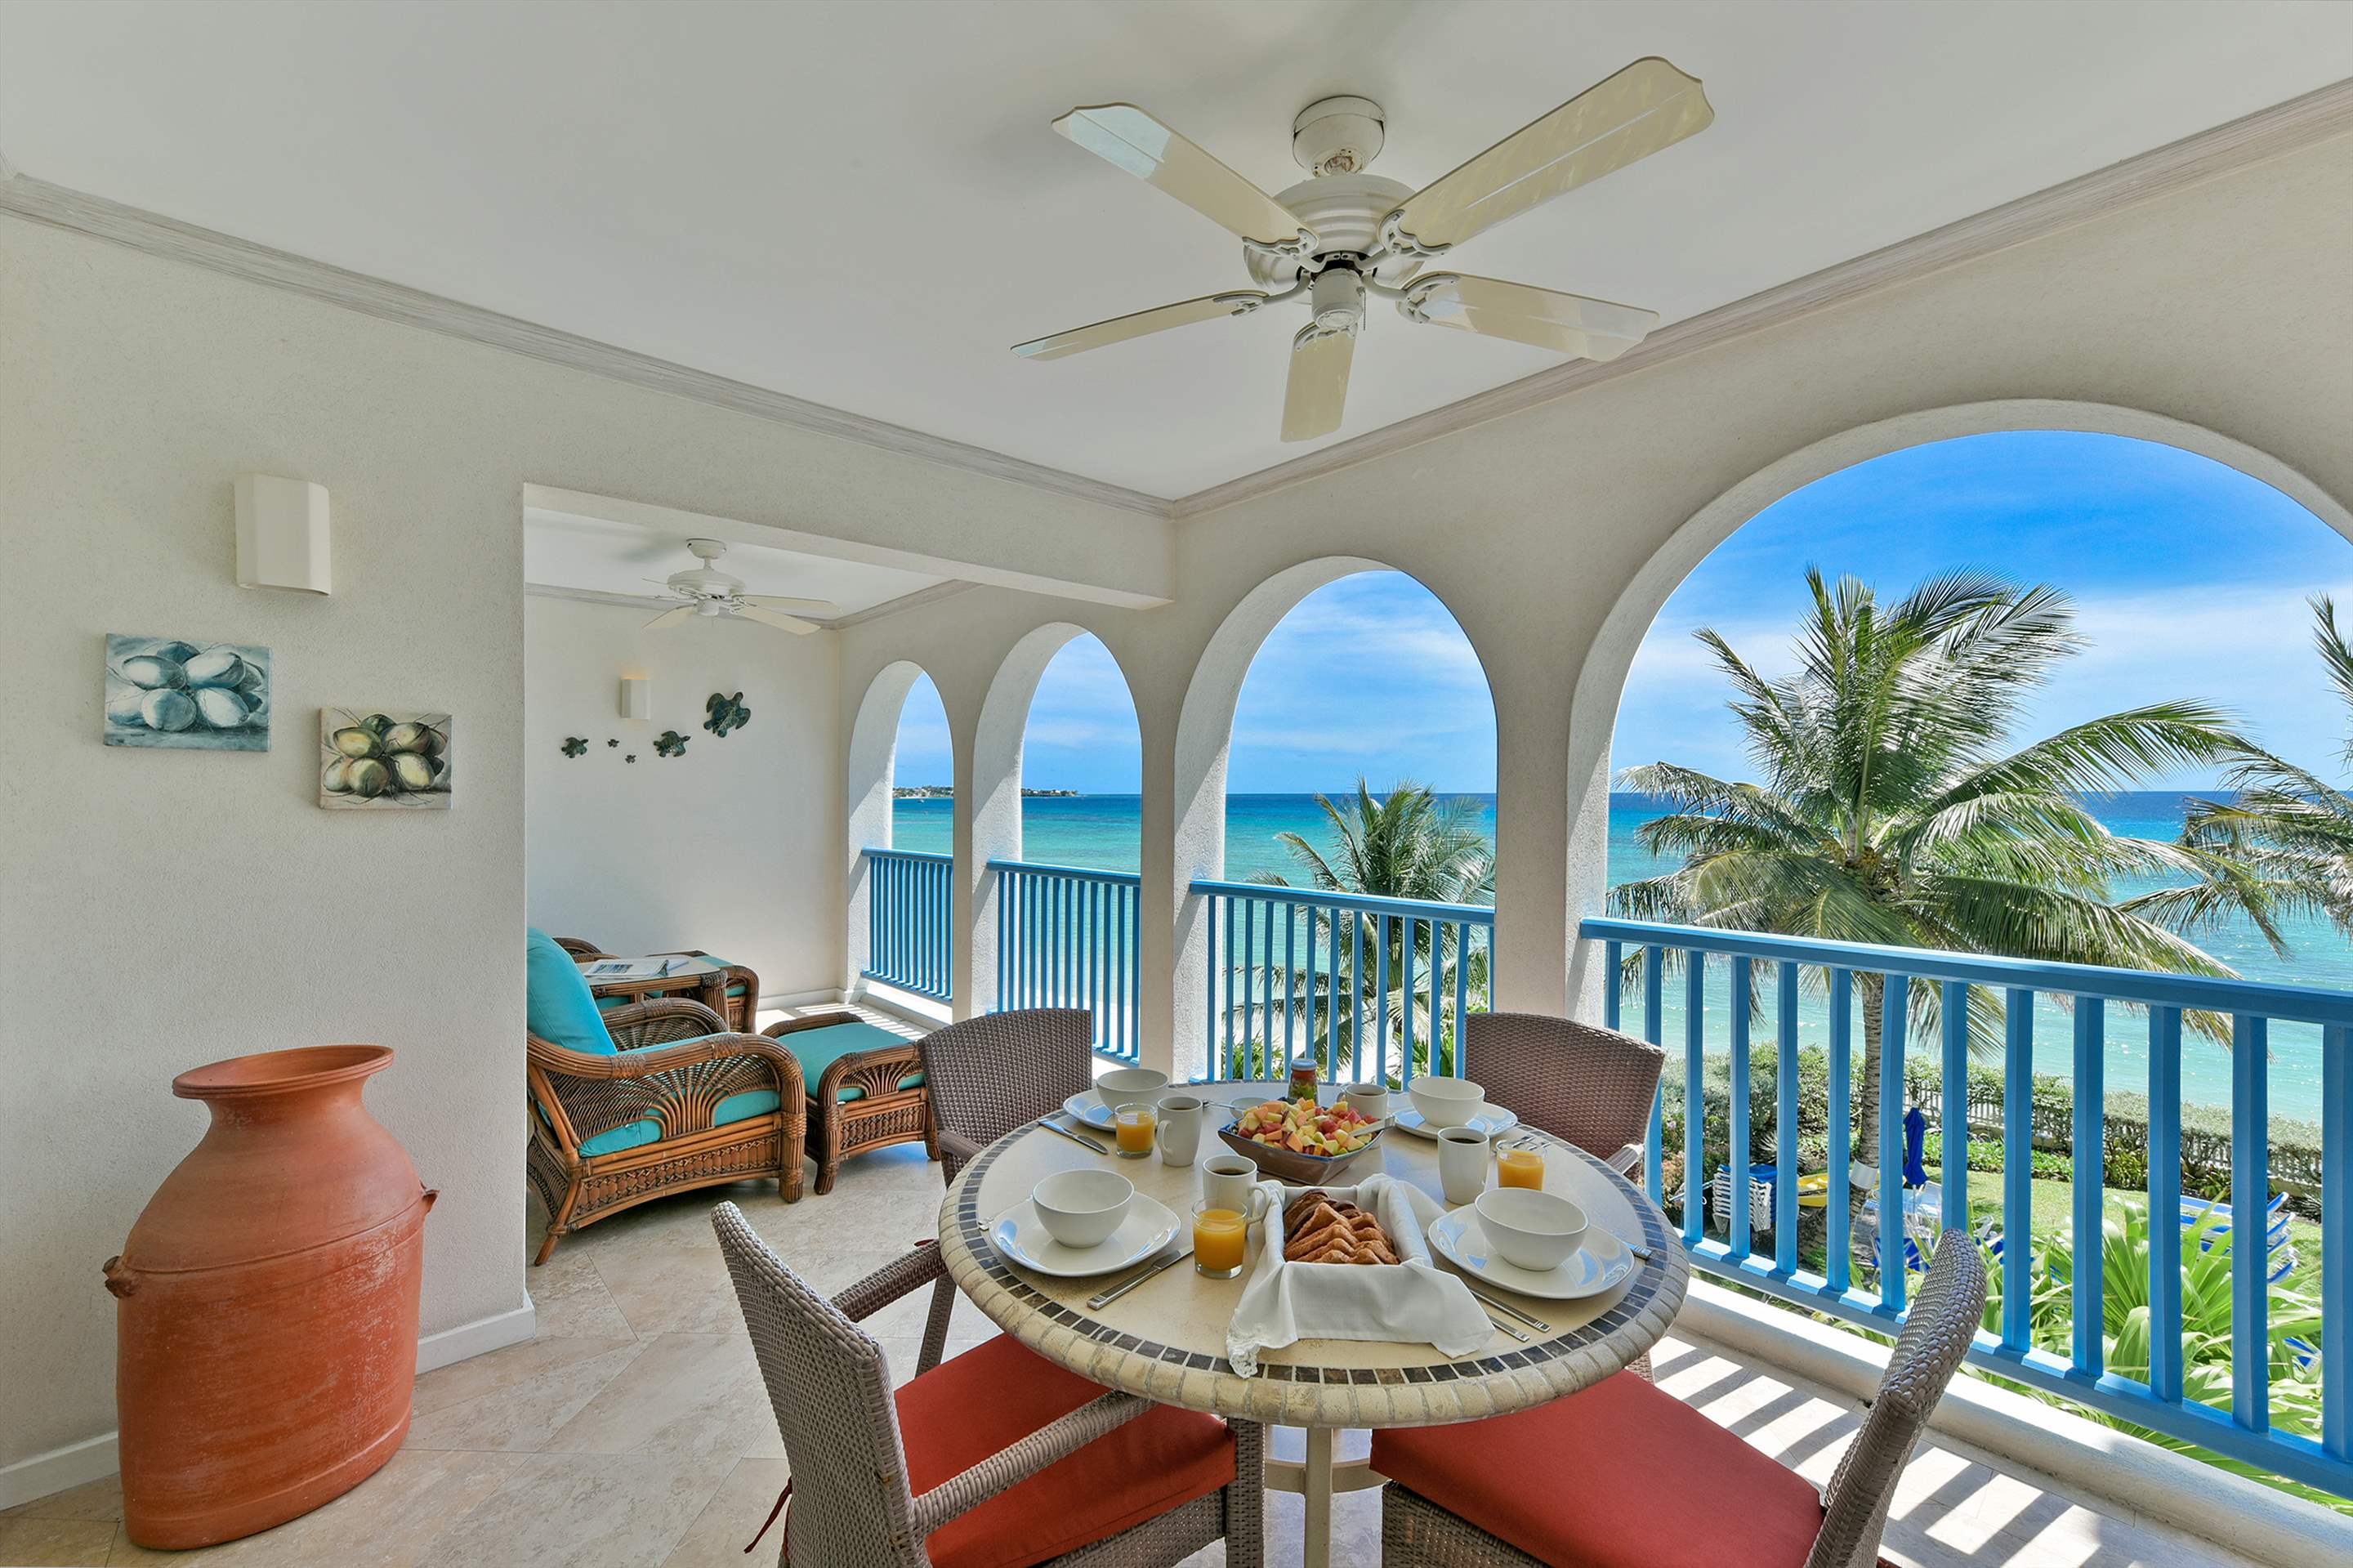 Maxwell Beach Villas 302, 2 bedroom, 2 bedroom apartment in St. Lawrence Gap & South Coast, Barbados Photo #2